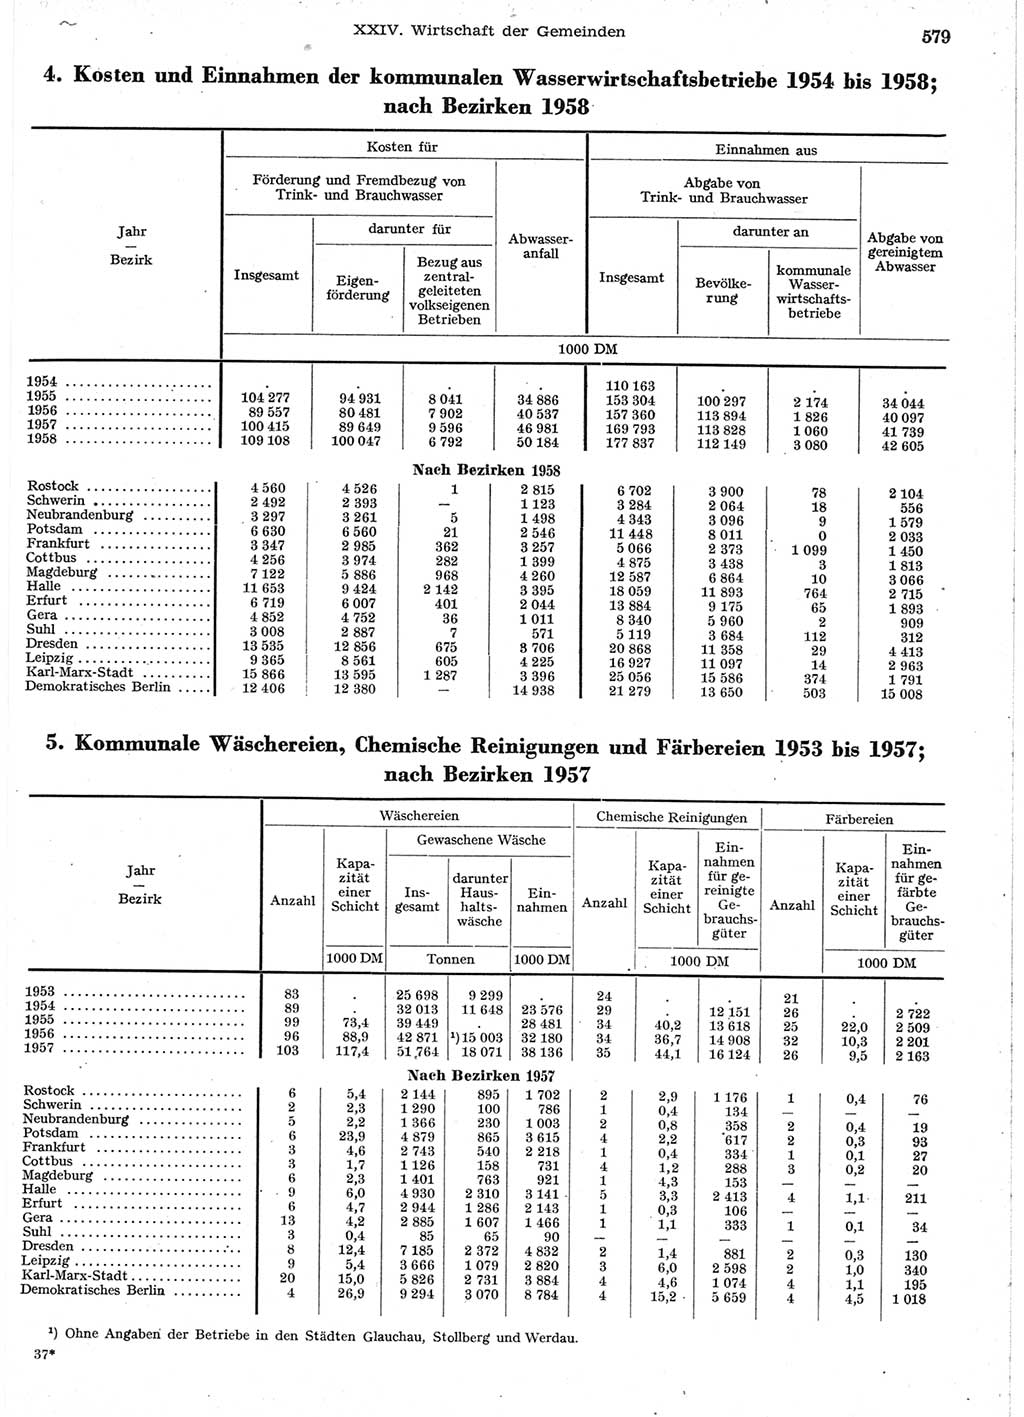 Statistisches Jahrbuch der Deutschen Demokratischen Republik (DDR) 1958, Seite 579 (Stat. Jb. DDR 1958, S. 579)